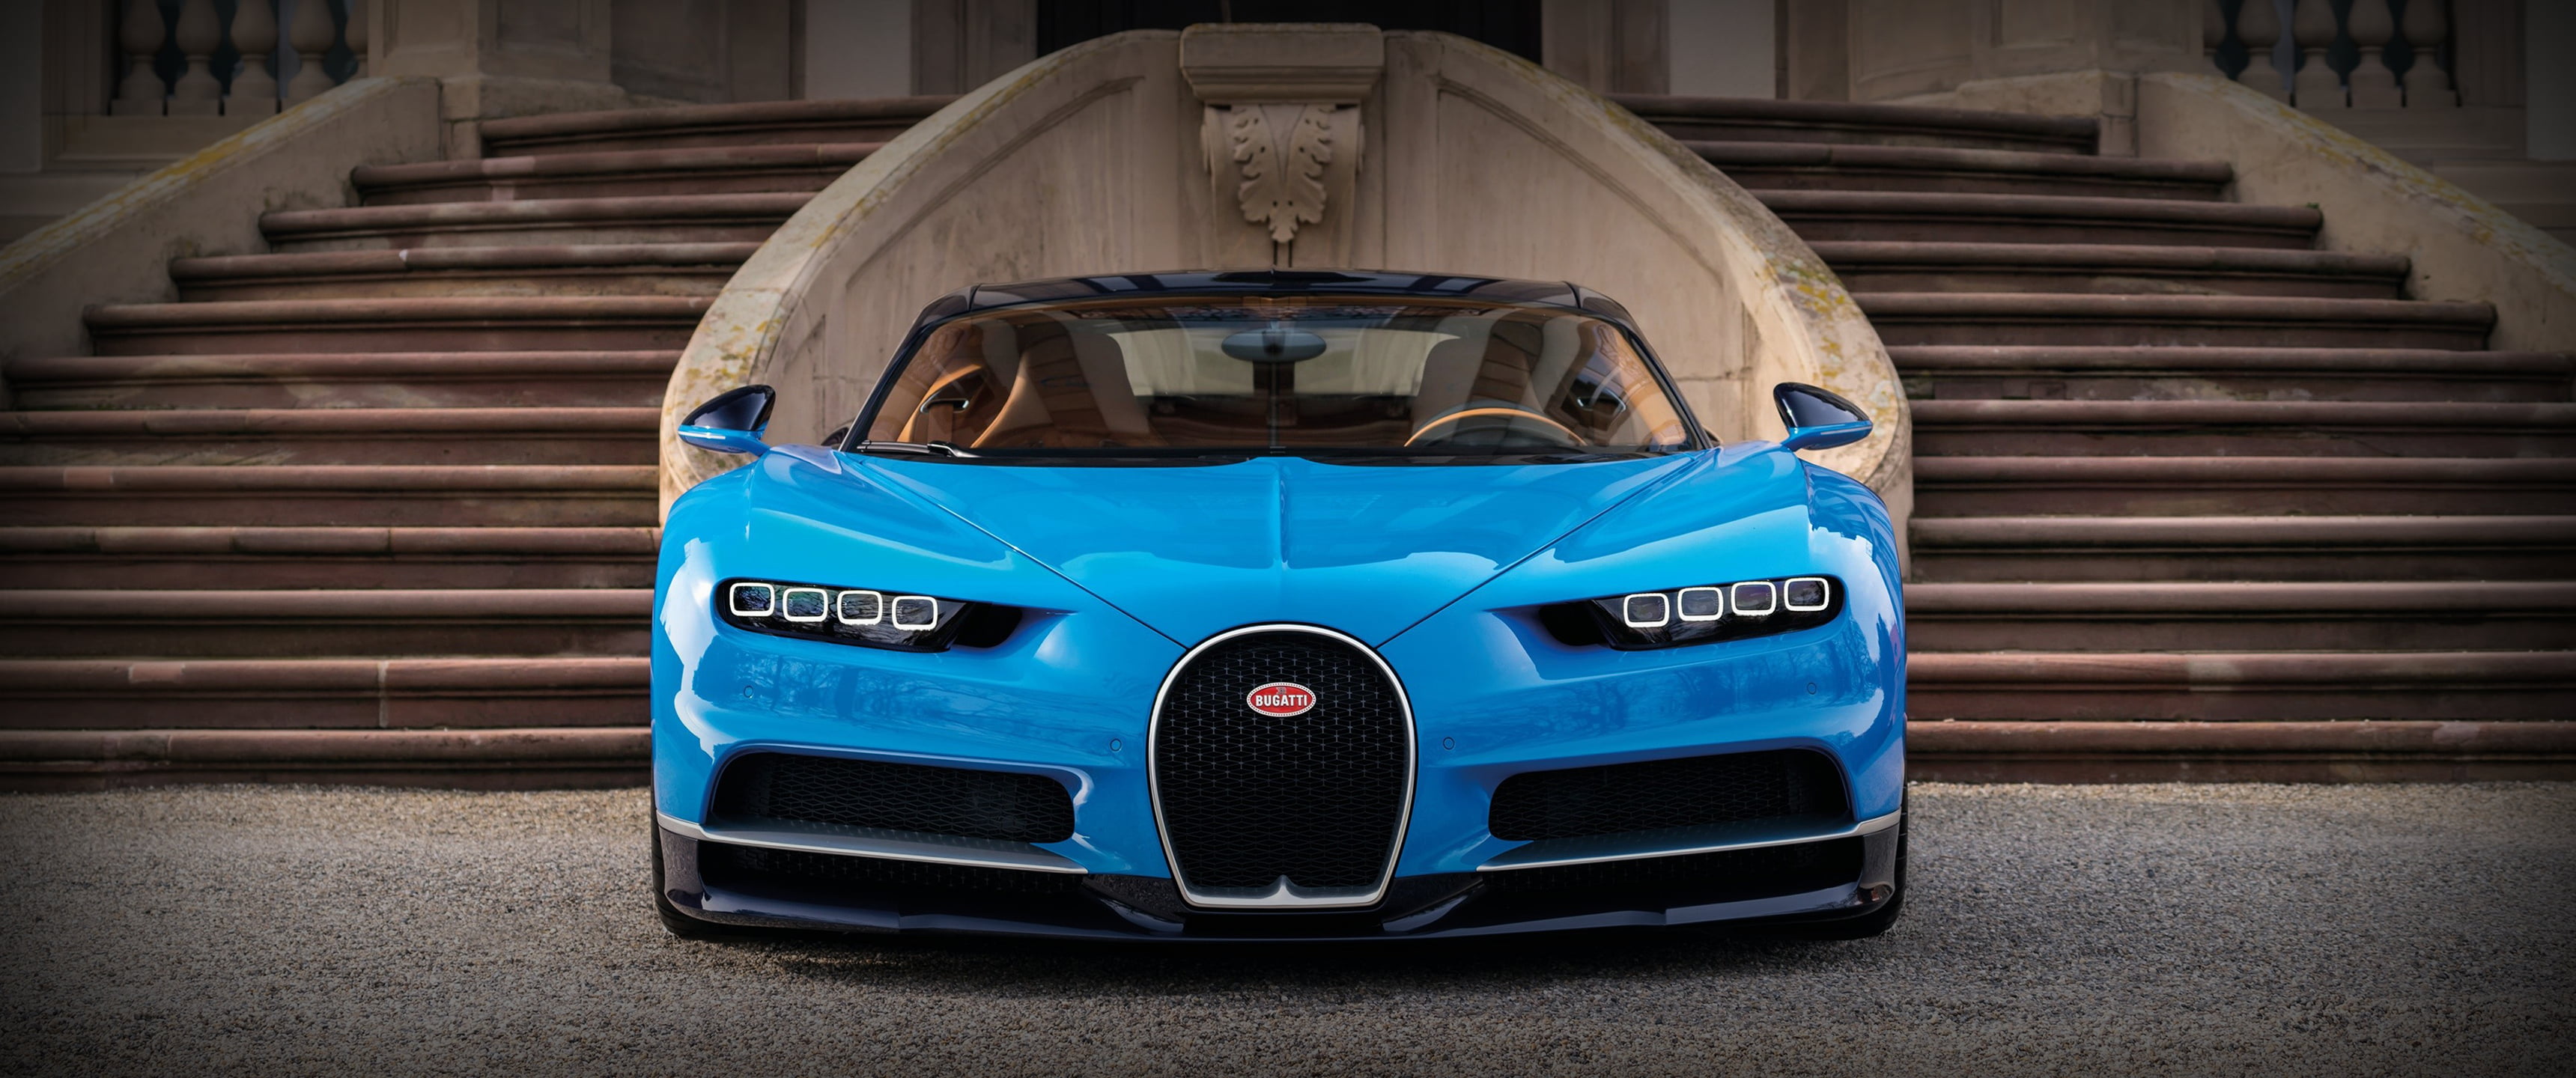 Bugatti Chiron , HD Wallpaper & Backgrounds